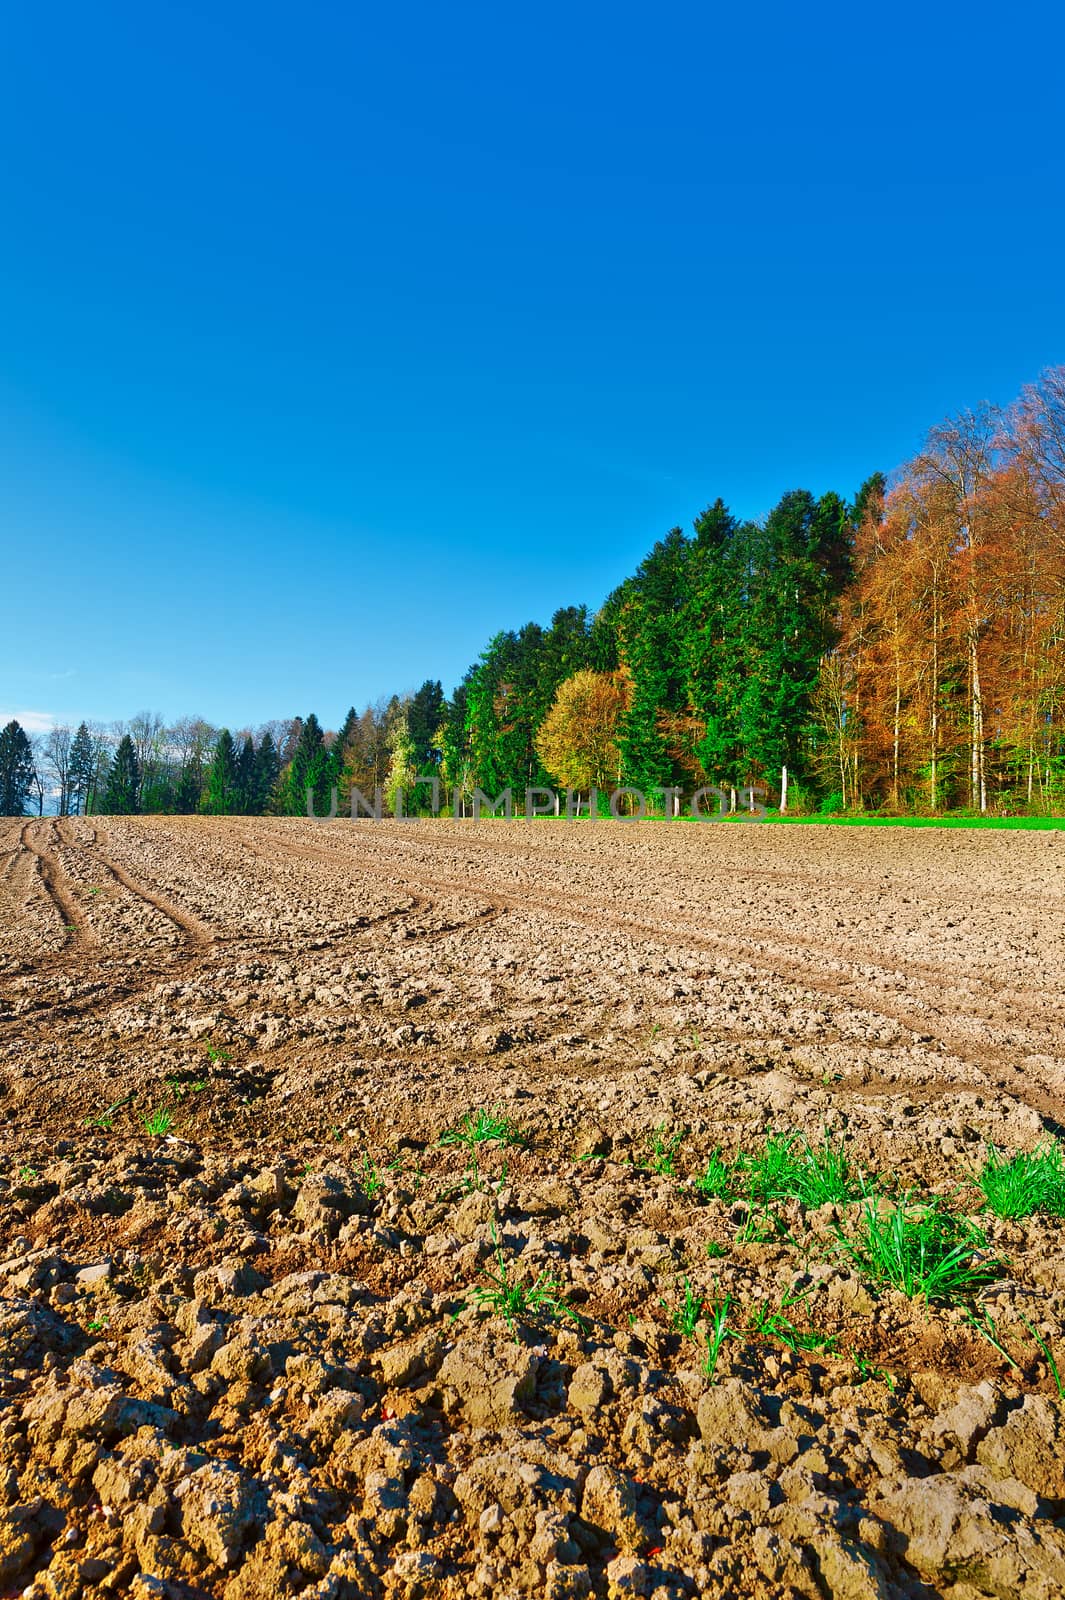 Plowed Fields Framed by Forest in Switzerland